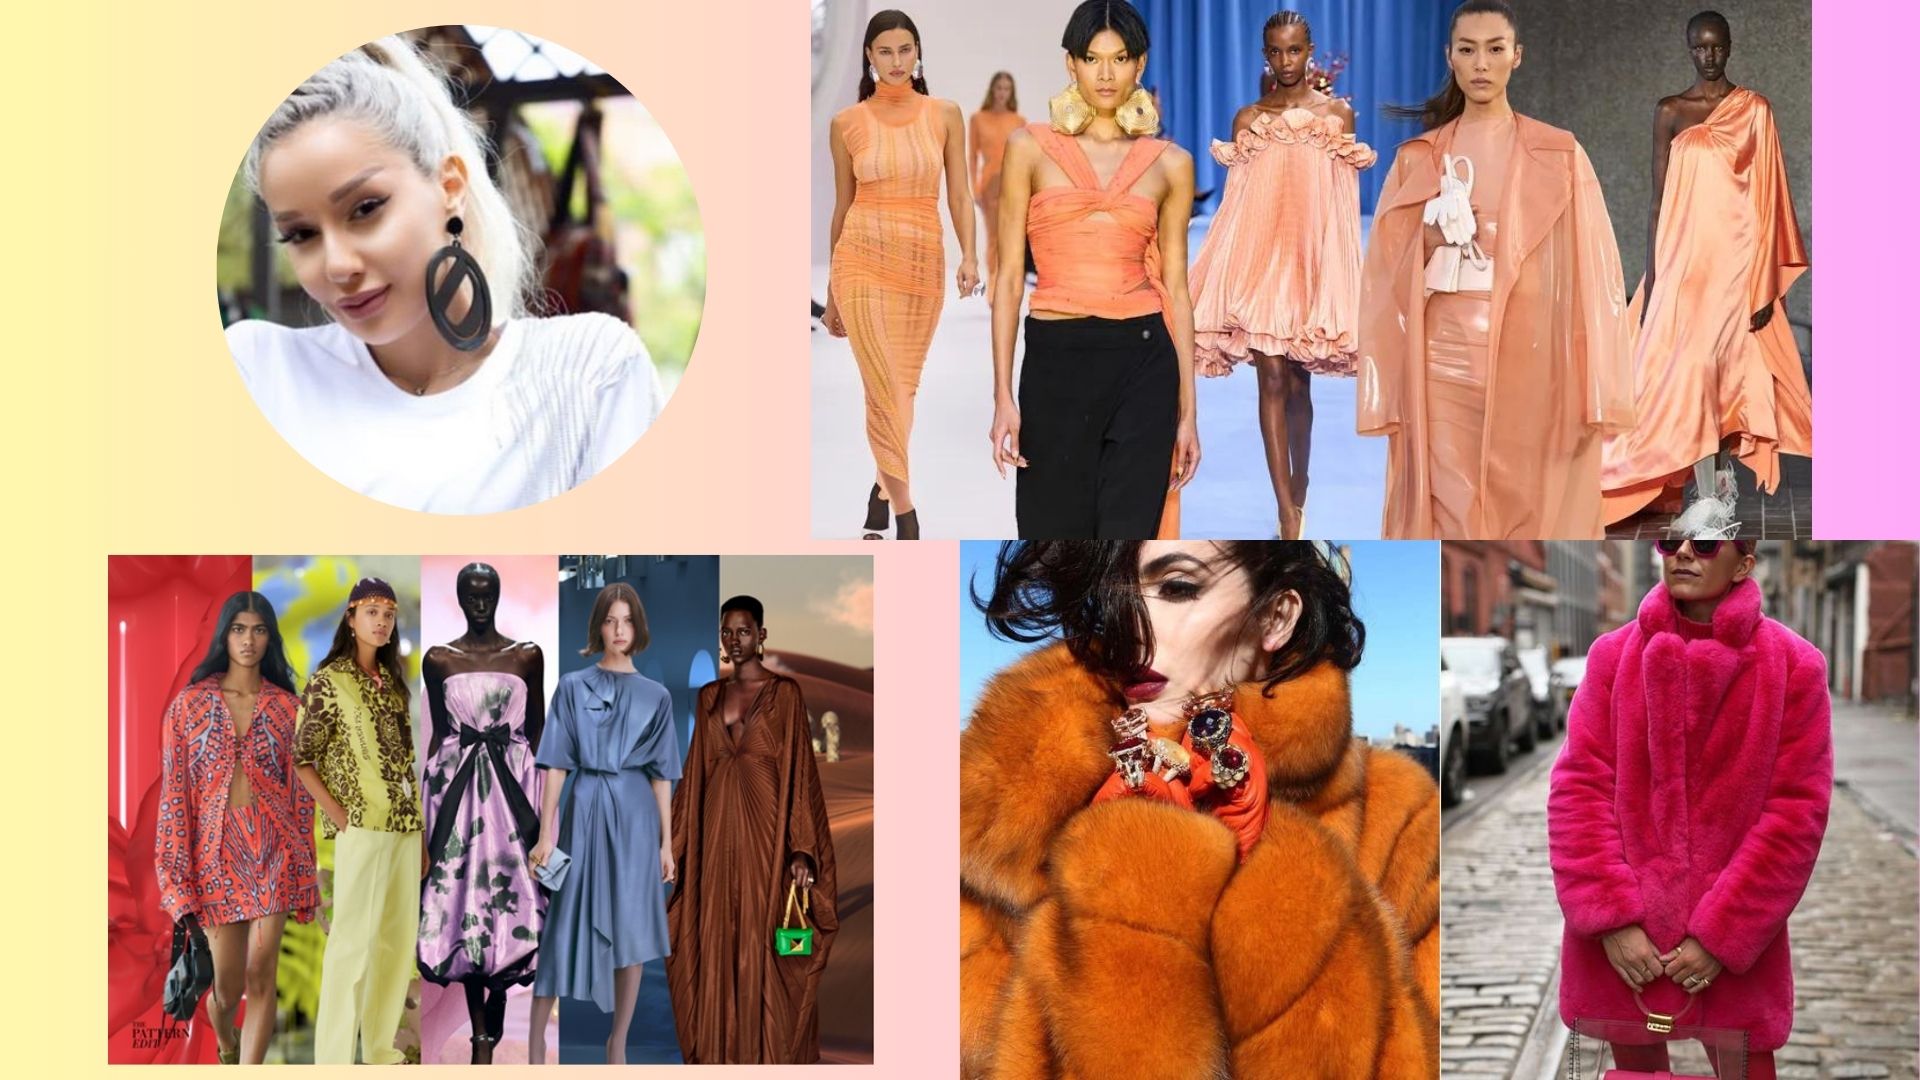 2024թ-ի նորաձևությունը կանացիությունն ընդգծելու մասին է․ Դիանա Շատվերյանը՝ հաջորդ տարվա առաջնորդող  գունային նոտաների և  մոռացված հինը նորից զգեստապահարան վերադարձնելու մասին